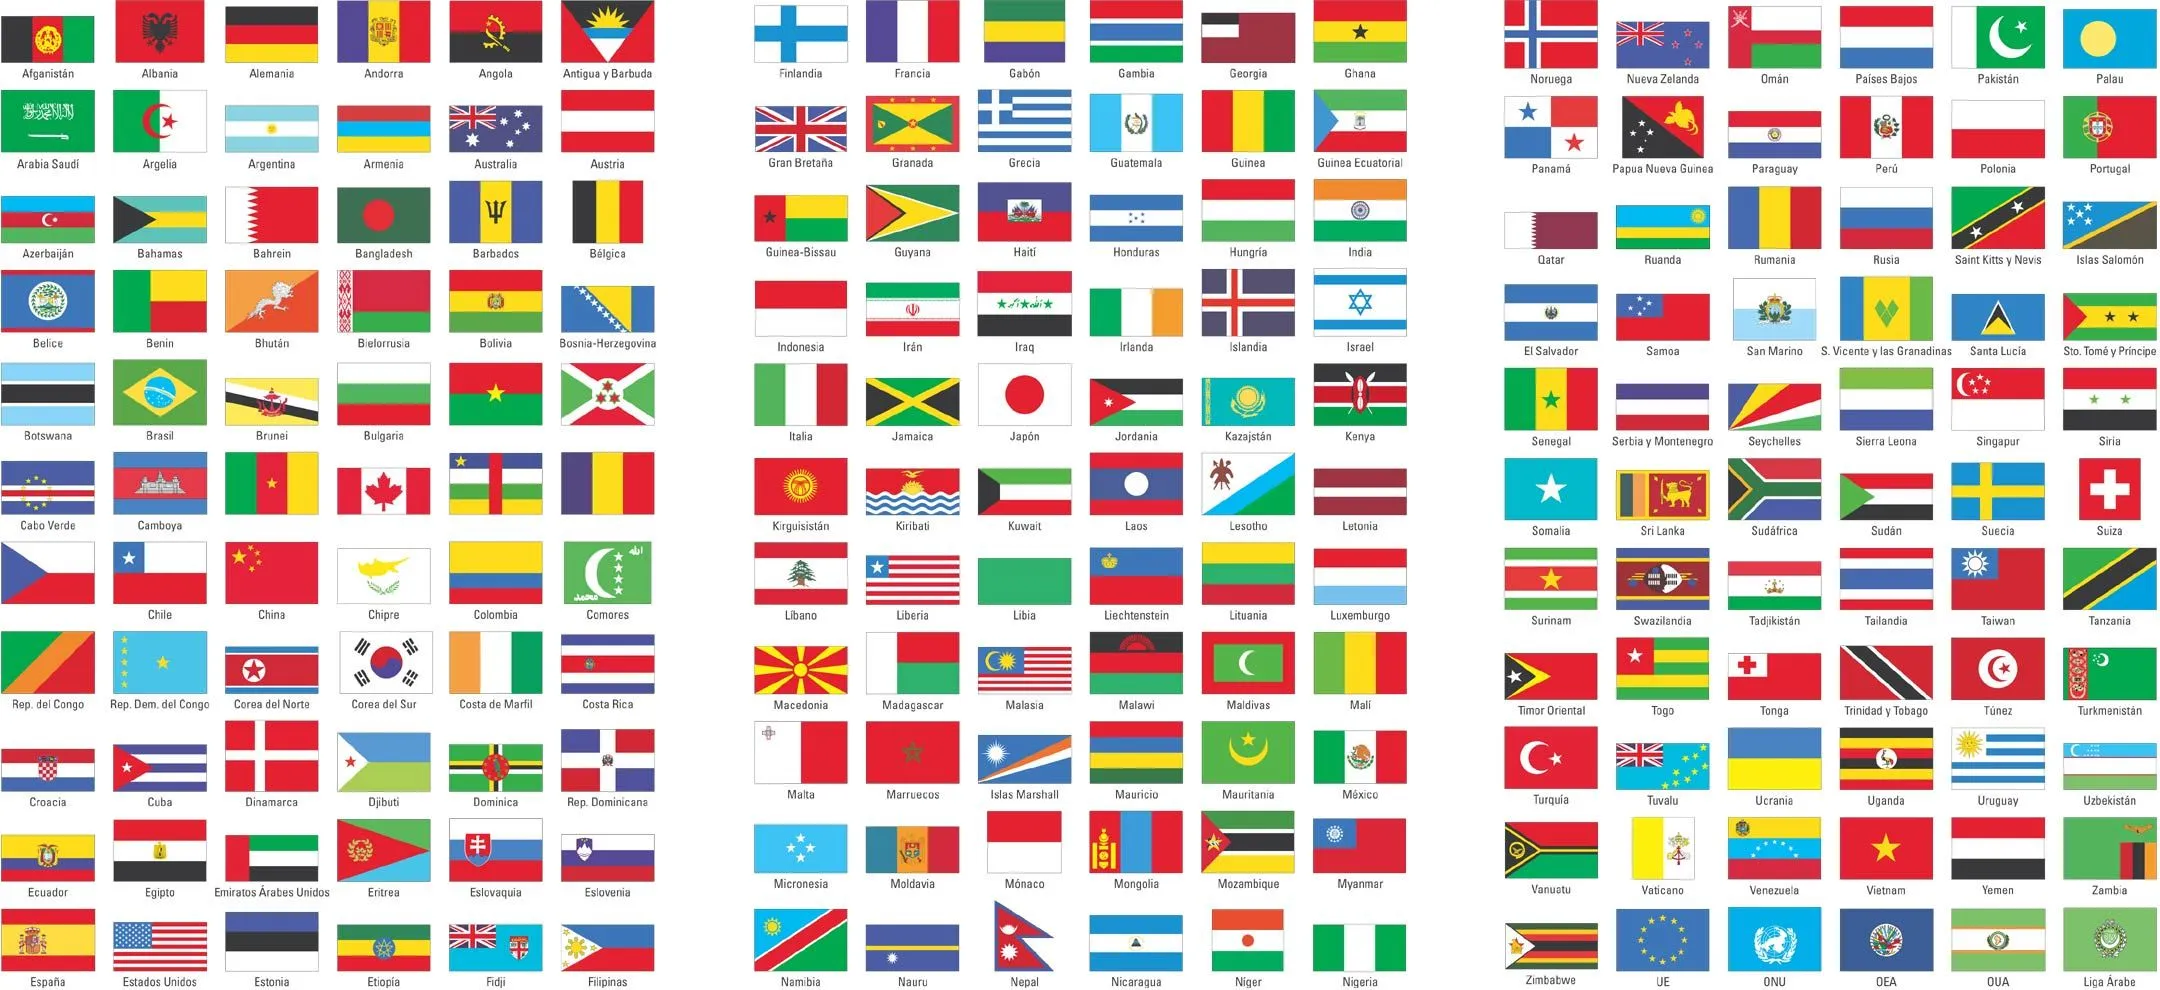 Banderas del mundo con sus nombres en inglés - Banderas del Mundo